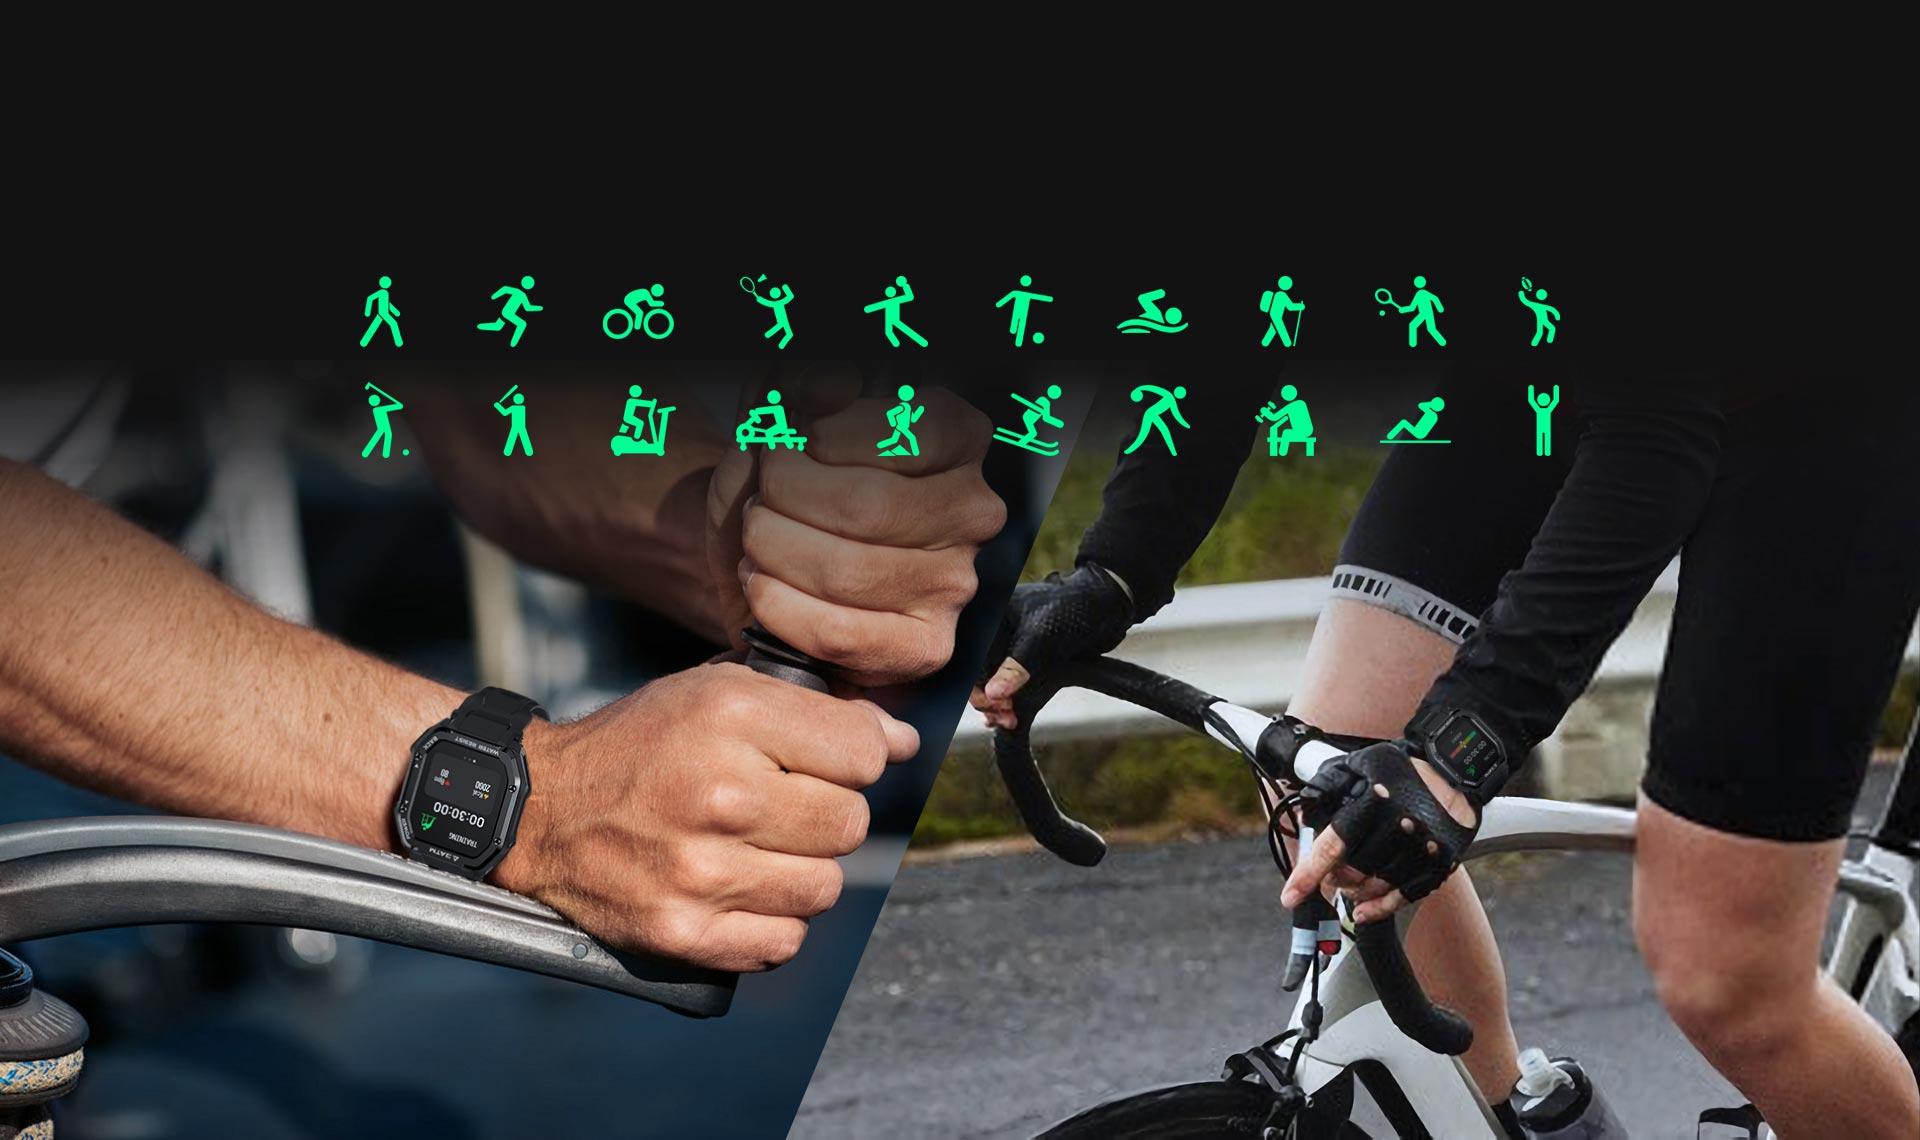 Το KOSPET ROCK Rugged Smartwatch διαθέτει 20+ αθλητικές λειτουργίες